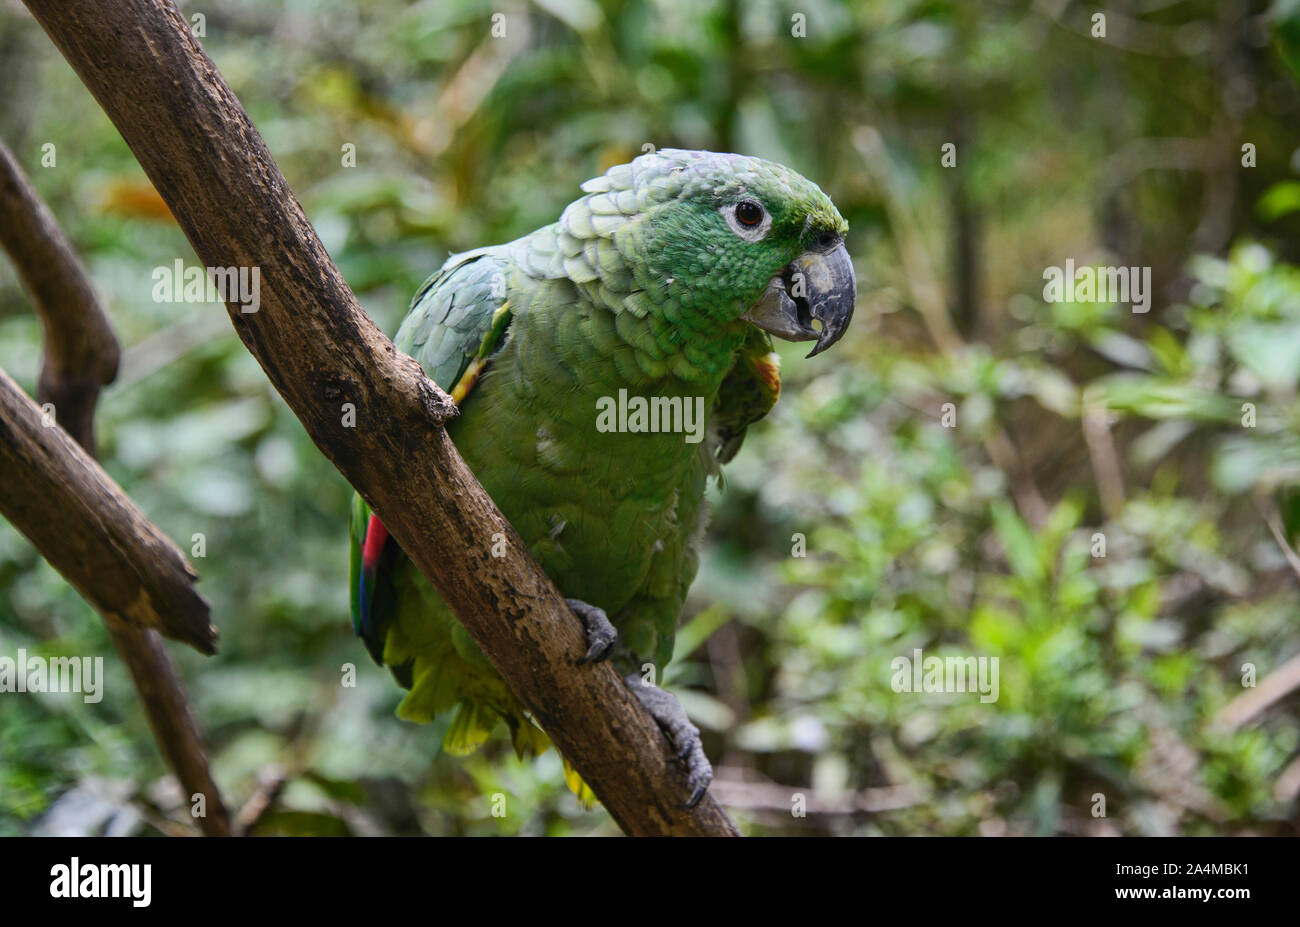 Southern mealy parrot (Amazona farinosa), Ecuador Stock Photo